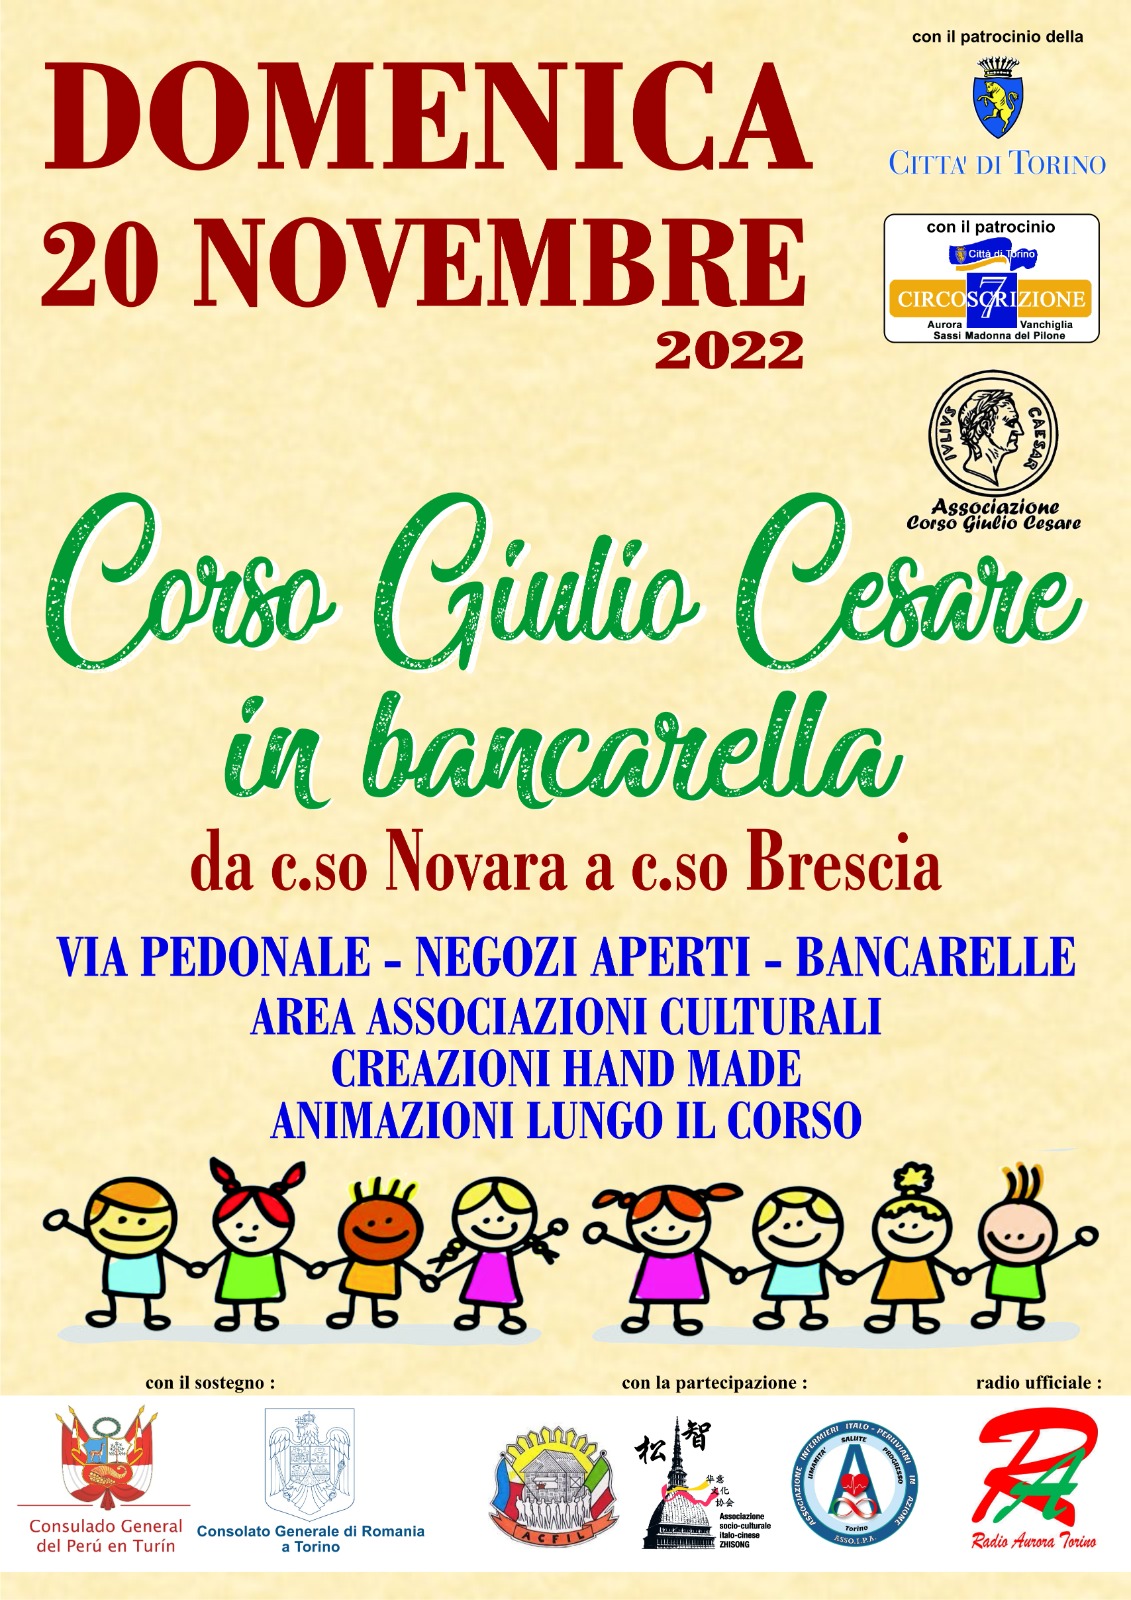 Festa Corso Giulio Cesare in bancarella 20 novembre 2022